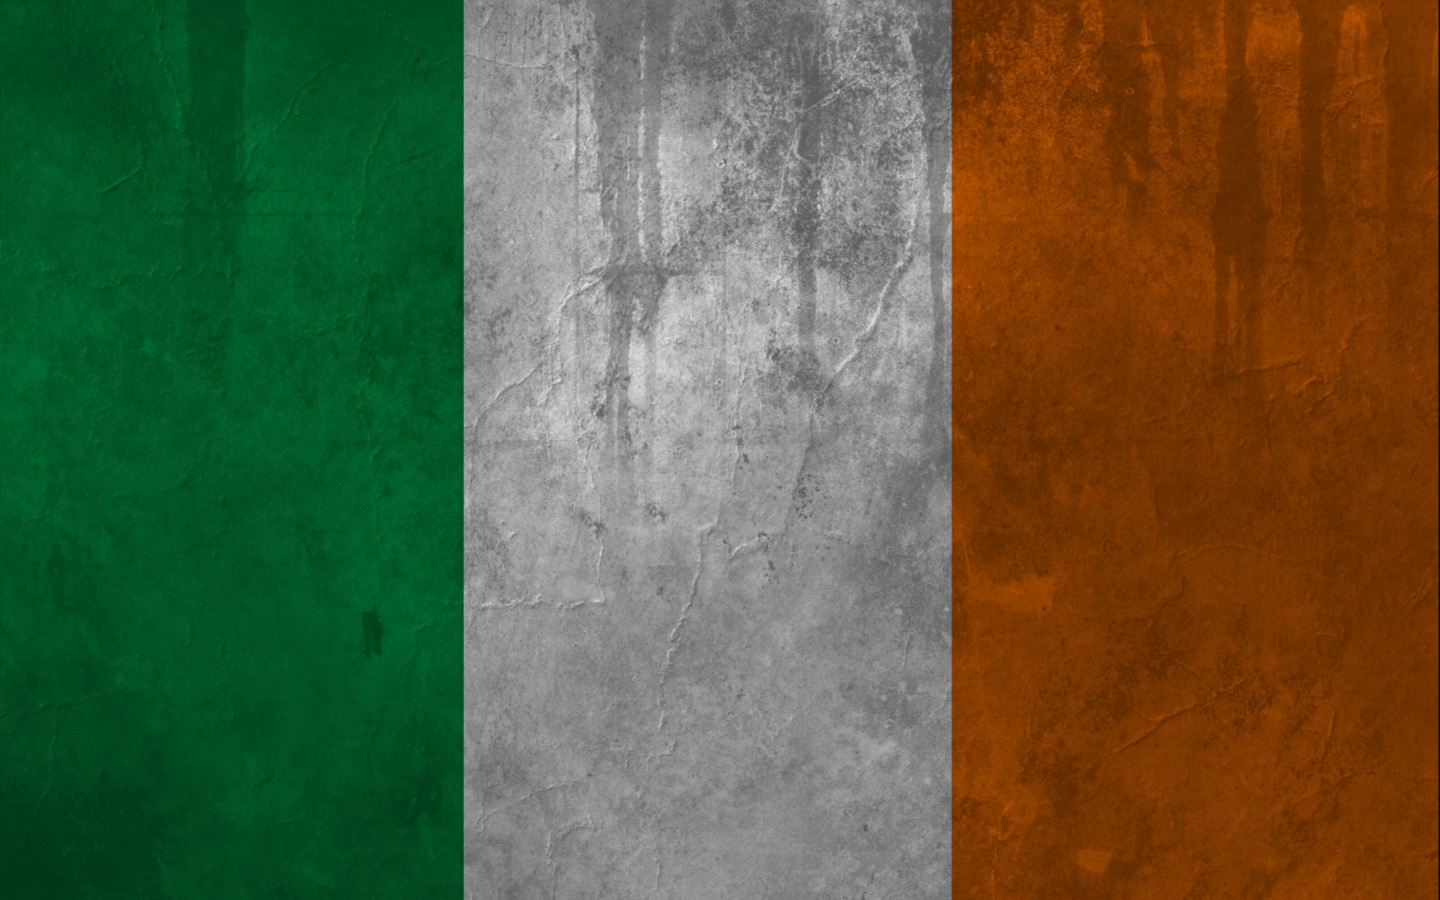 Irish Flag Wallpaper